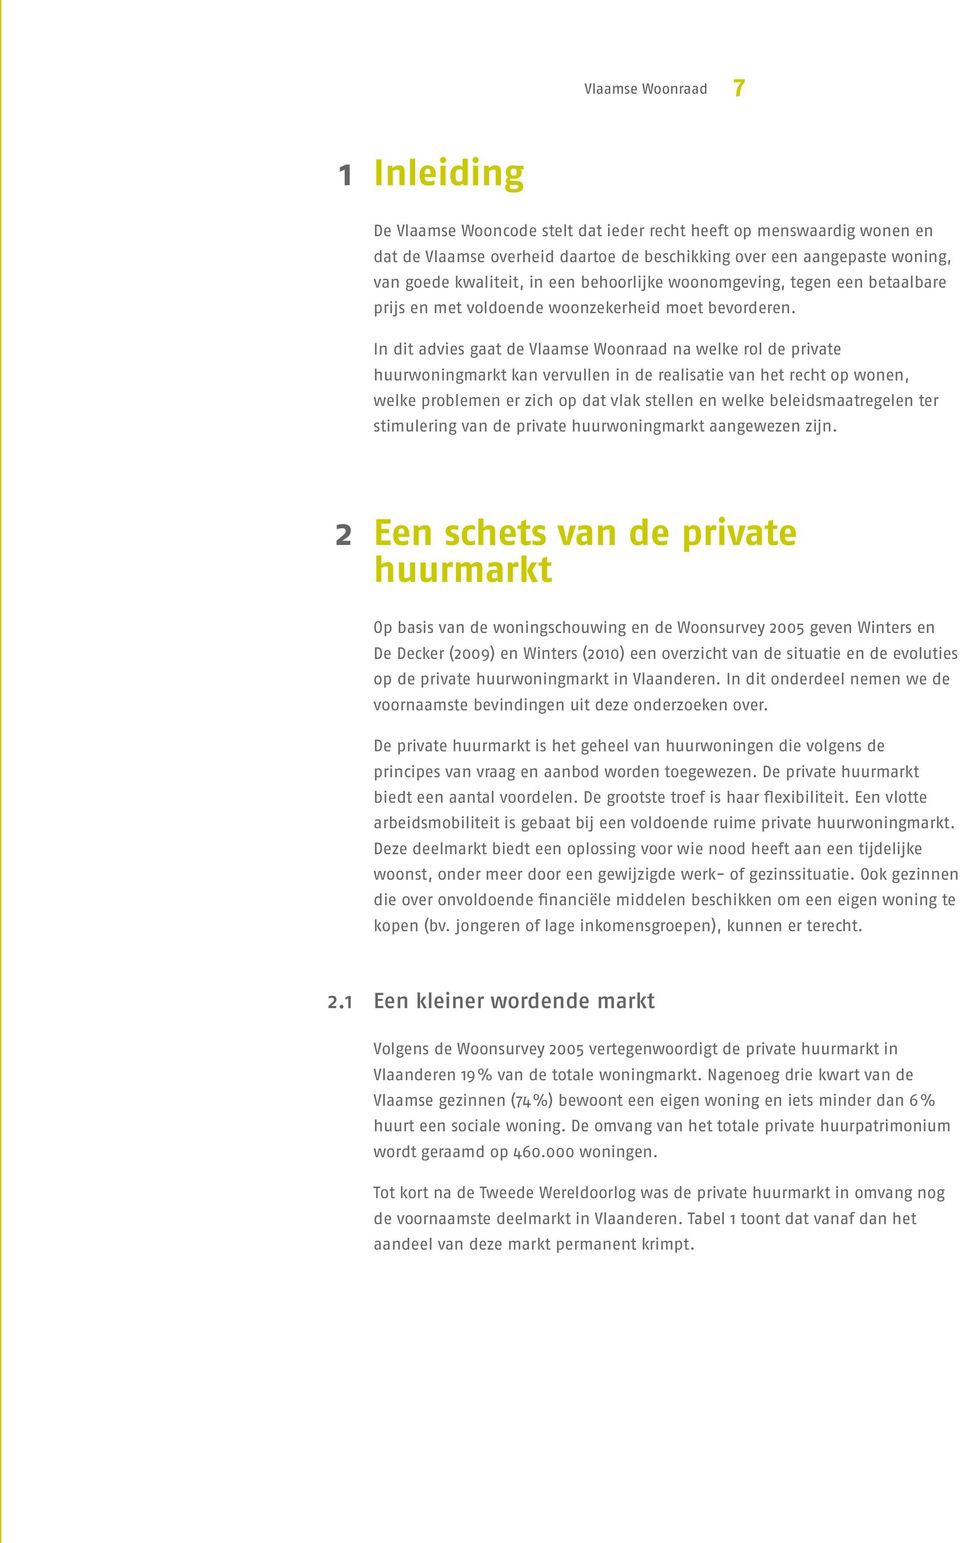 In dit advies gaat de Vlaamse Woonraad na welke rol de private huurwoningmarkt kan vervullen in de realisatie van het recht op wonen, welke problemen er zich op dat vlak stellen en welke